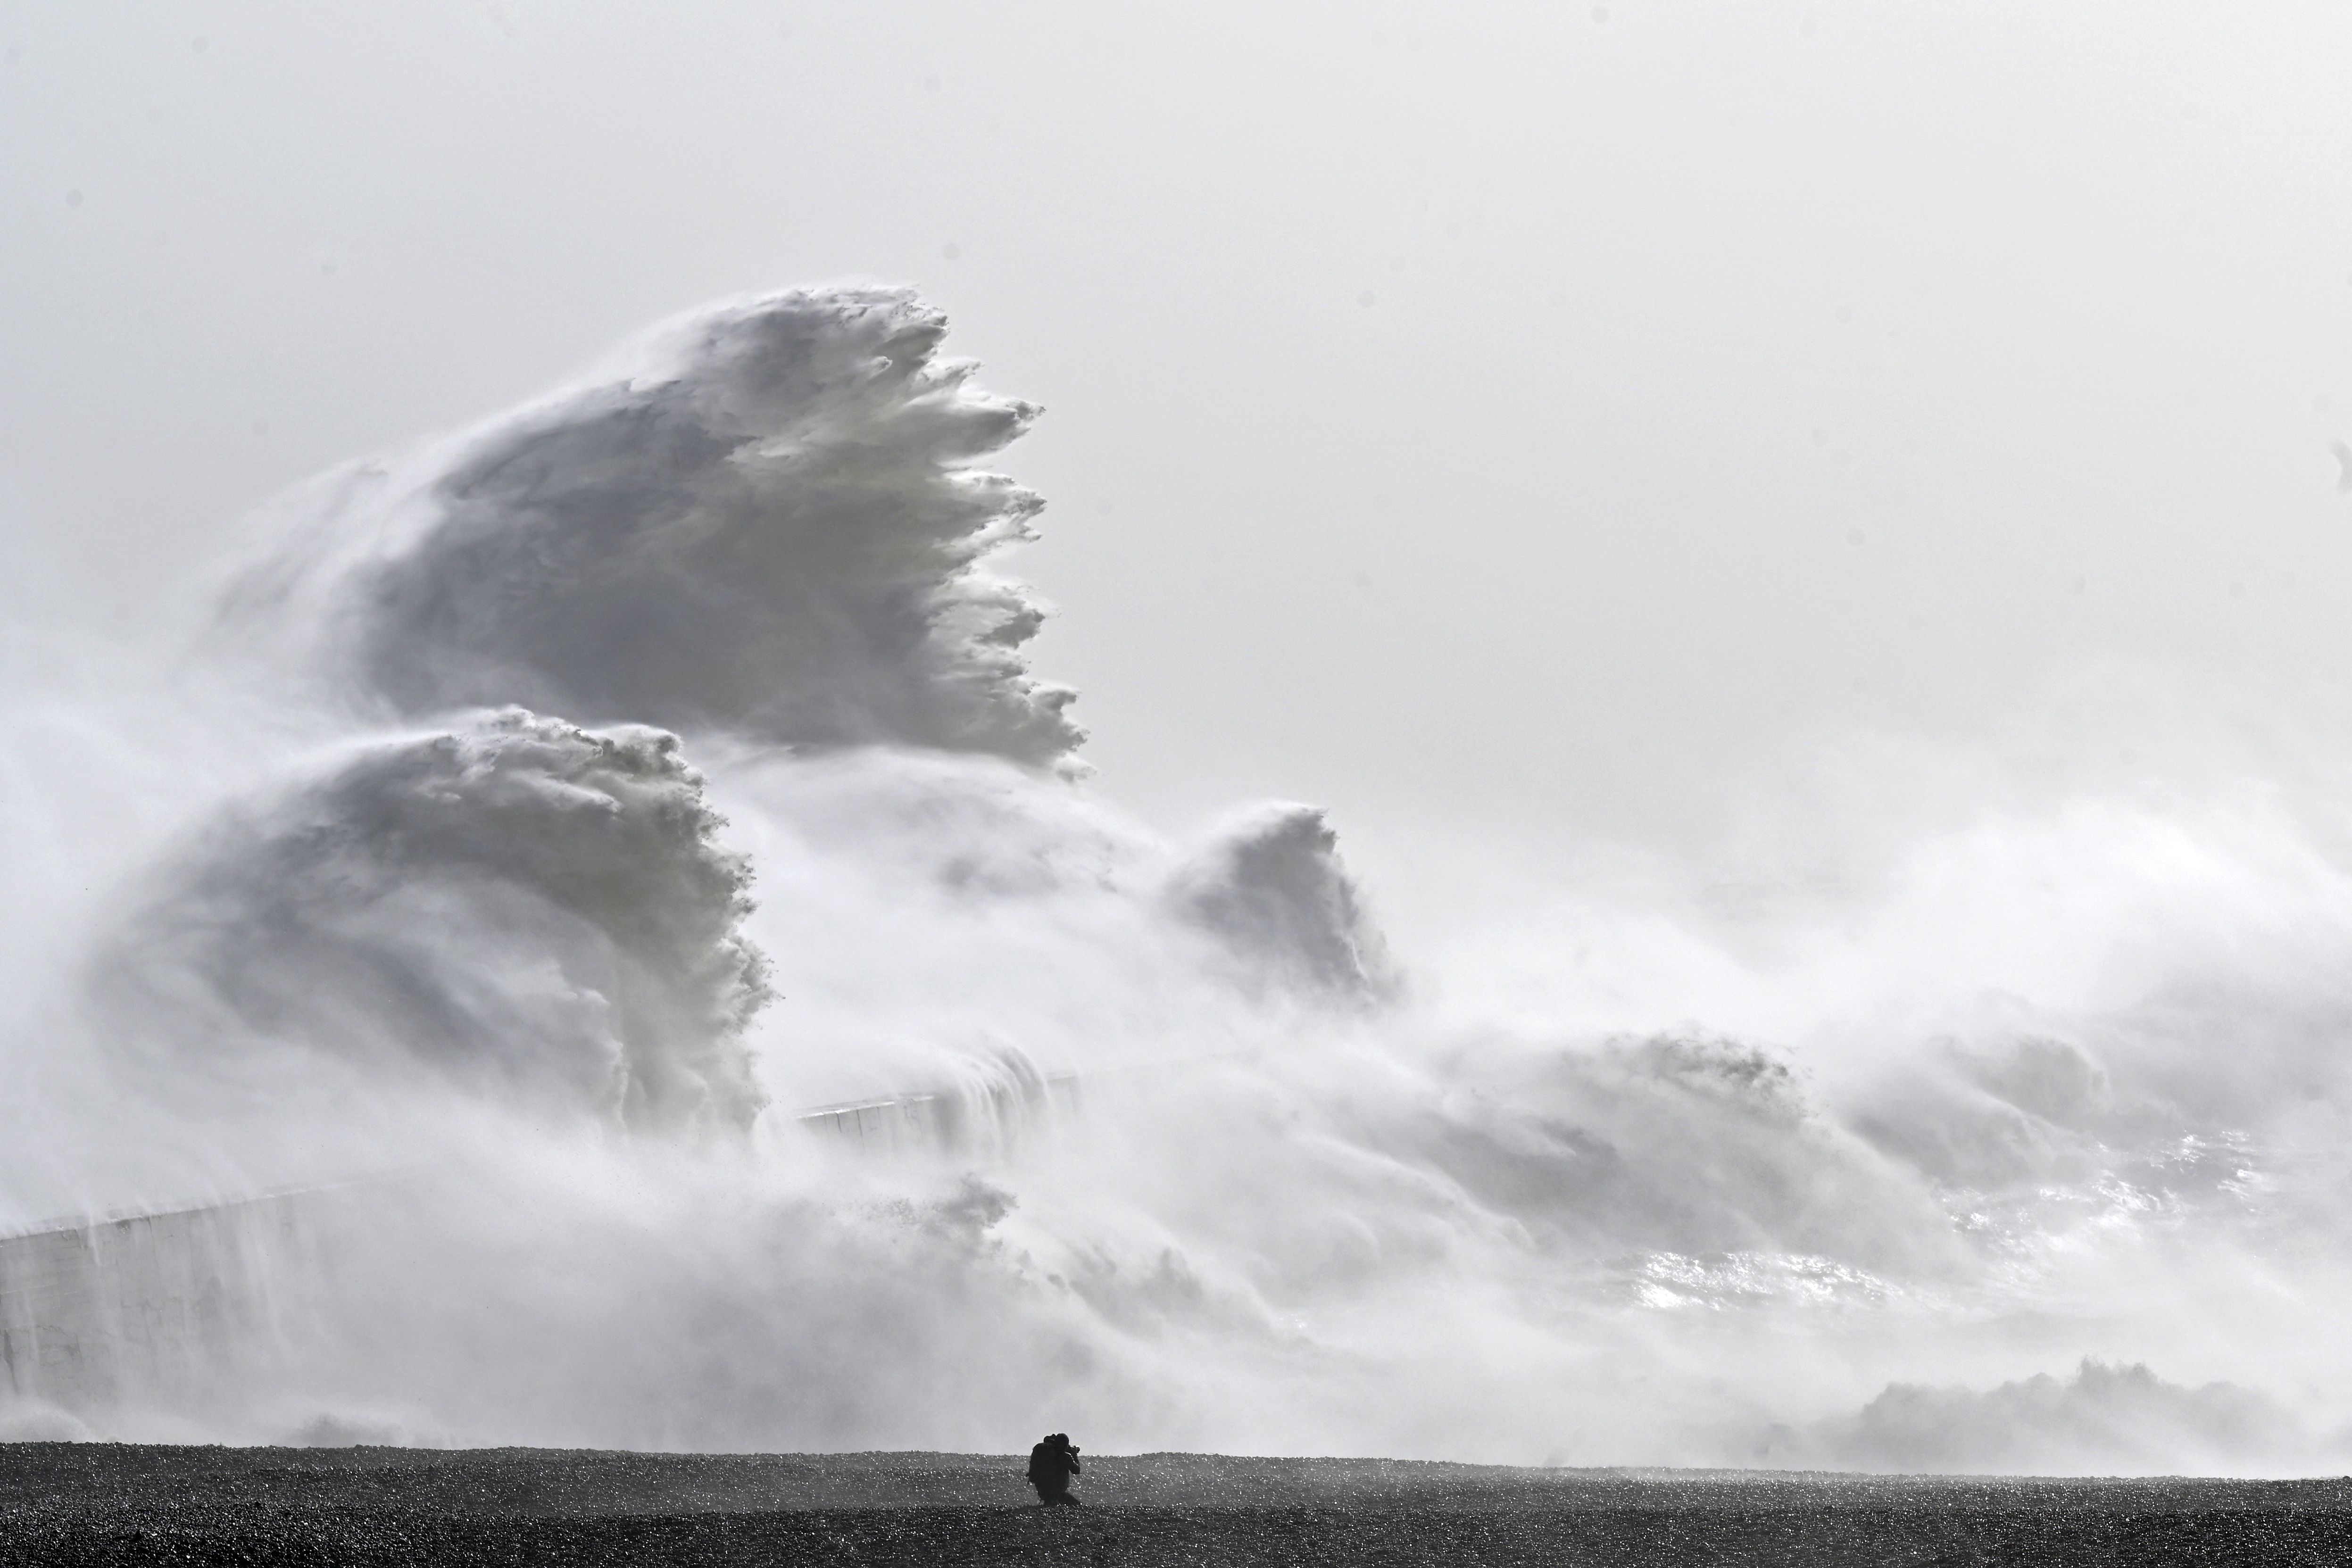 Des vagues se sont écrasées sur le mur du port de Newhaven à Newhaven, dans le sud de l'Angleterre, le 2 février.  Le 18 janvier, alors que la tempête Eunice apportait des vents violents à travers le pays.  De puissantes tempêtes comme celle-ci sont de plus en plus fréquentes en raison du changement climatique induit par l'homme.